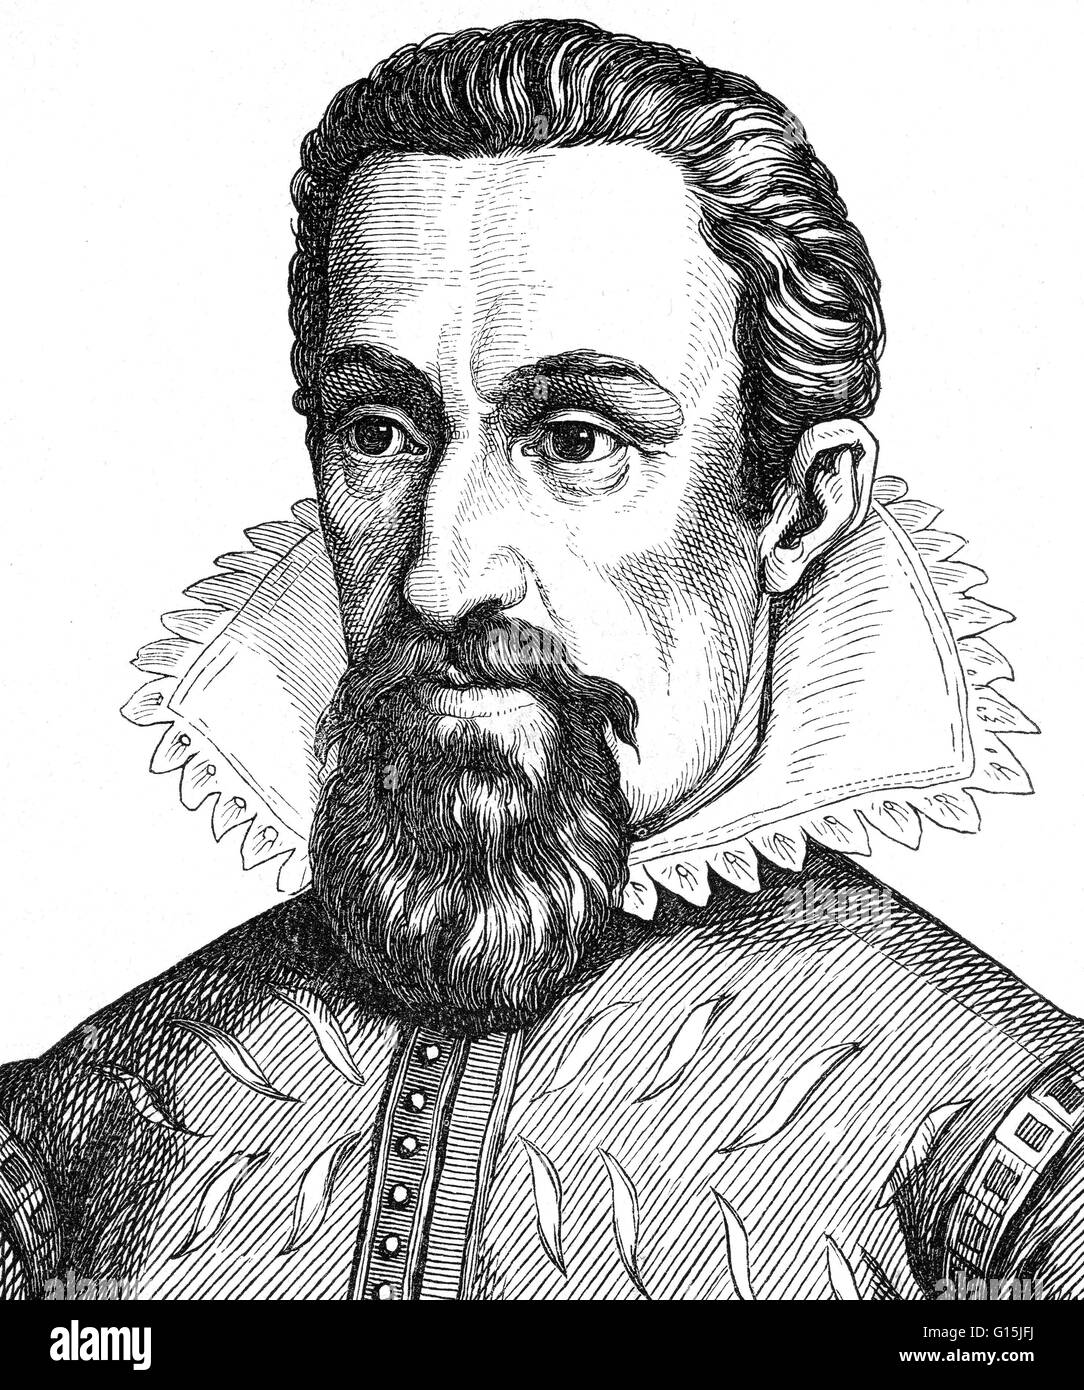 Johannes Kepler (Décembre 27, 1571 - Novembre 15, 1630) était un mathématicien, astronome et astrologue. Une figure clé de la révolution scientifique du 17e siècle, il est surtout connu pour ses oeuvres Astronomia nova, Harmonices Mundi, et Quintessence Astronomia Banque D'Images